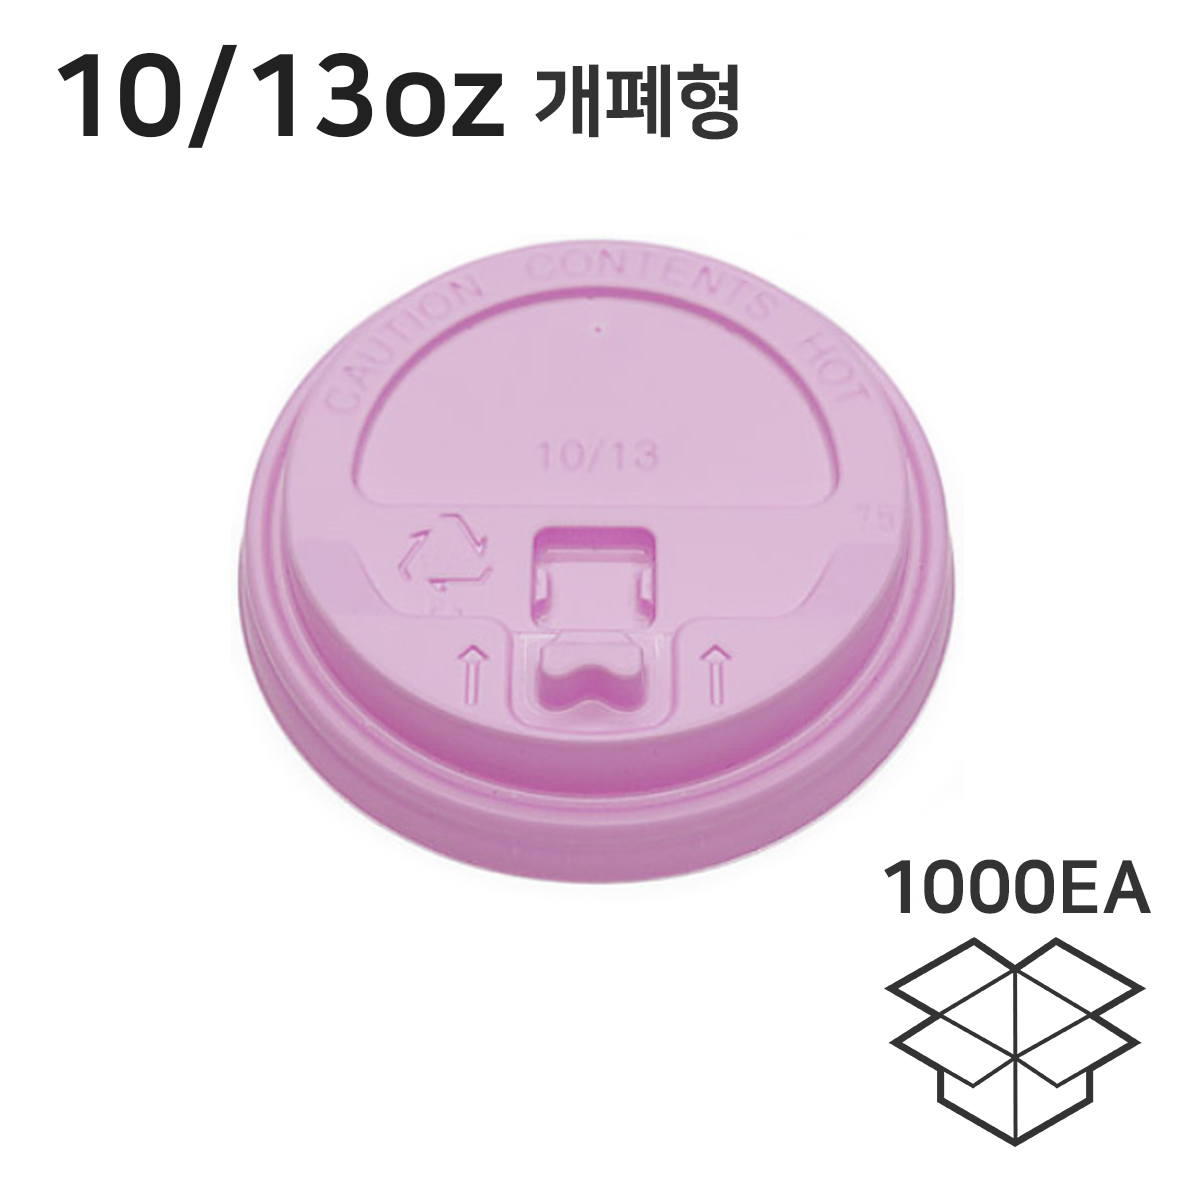 10/13온스 개폐형 테이크아웃종이컵뚜껑 핫컵리드 핑크 1박스 1000개